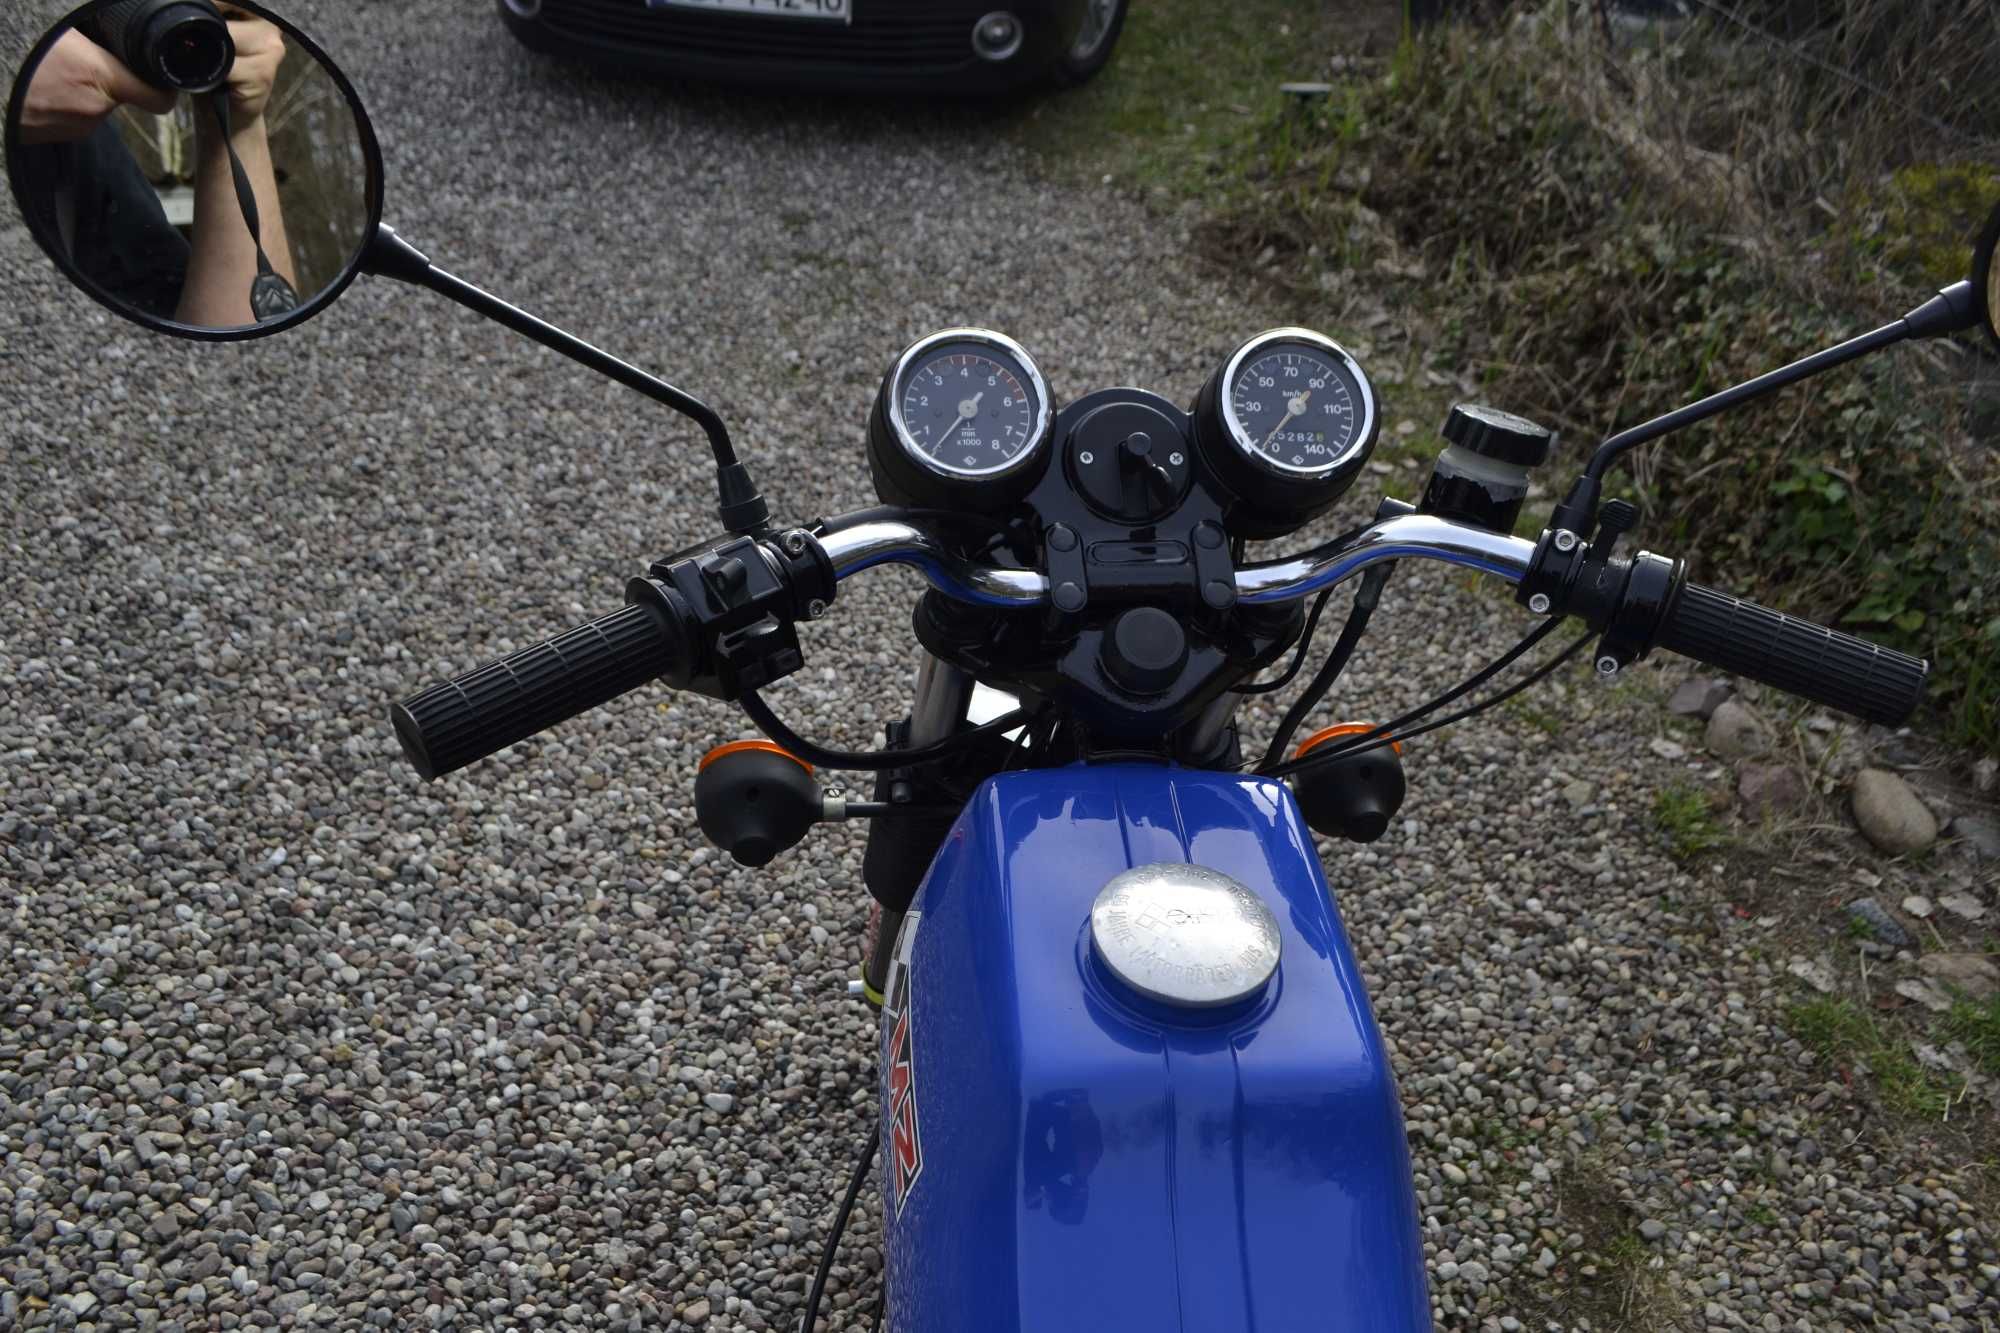 Motocykl MZ ETZ 250